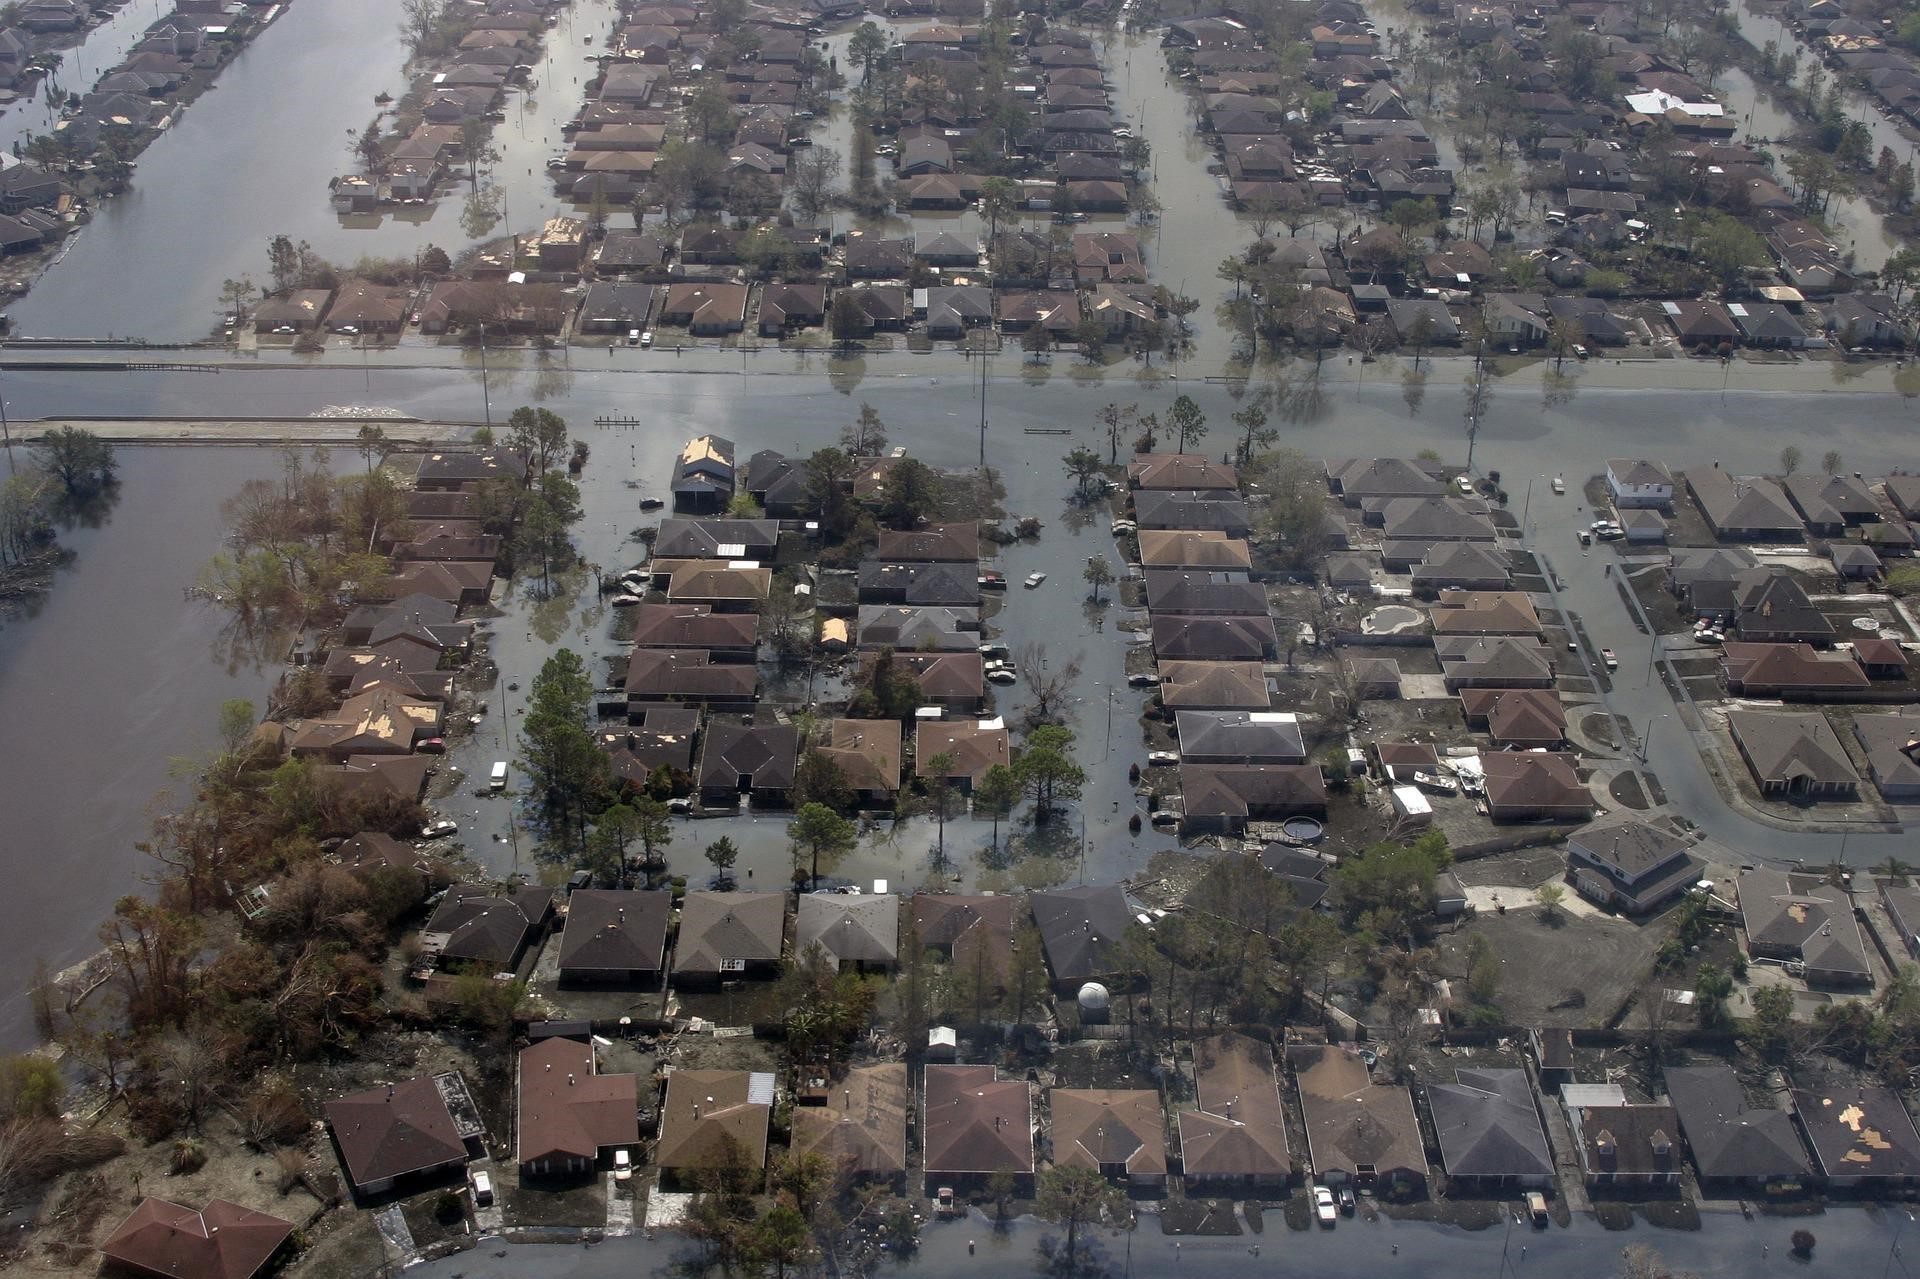 Hurricane Katrina damage